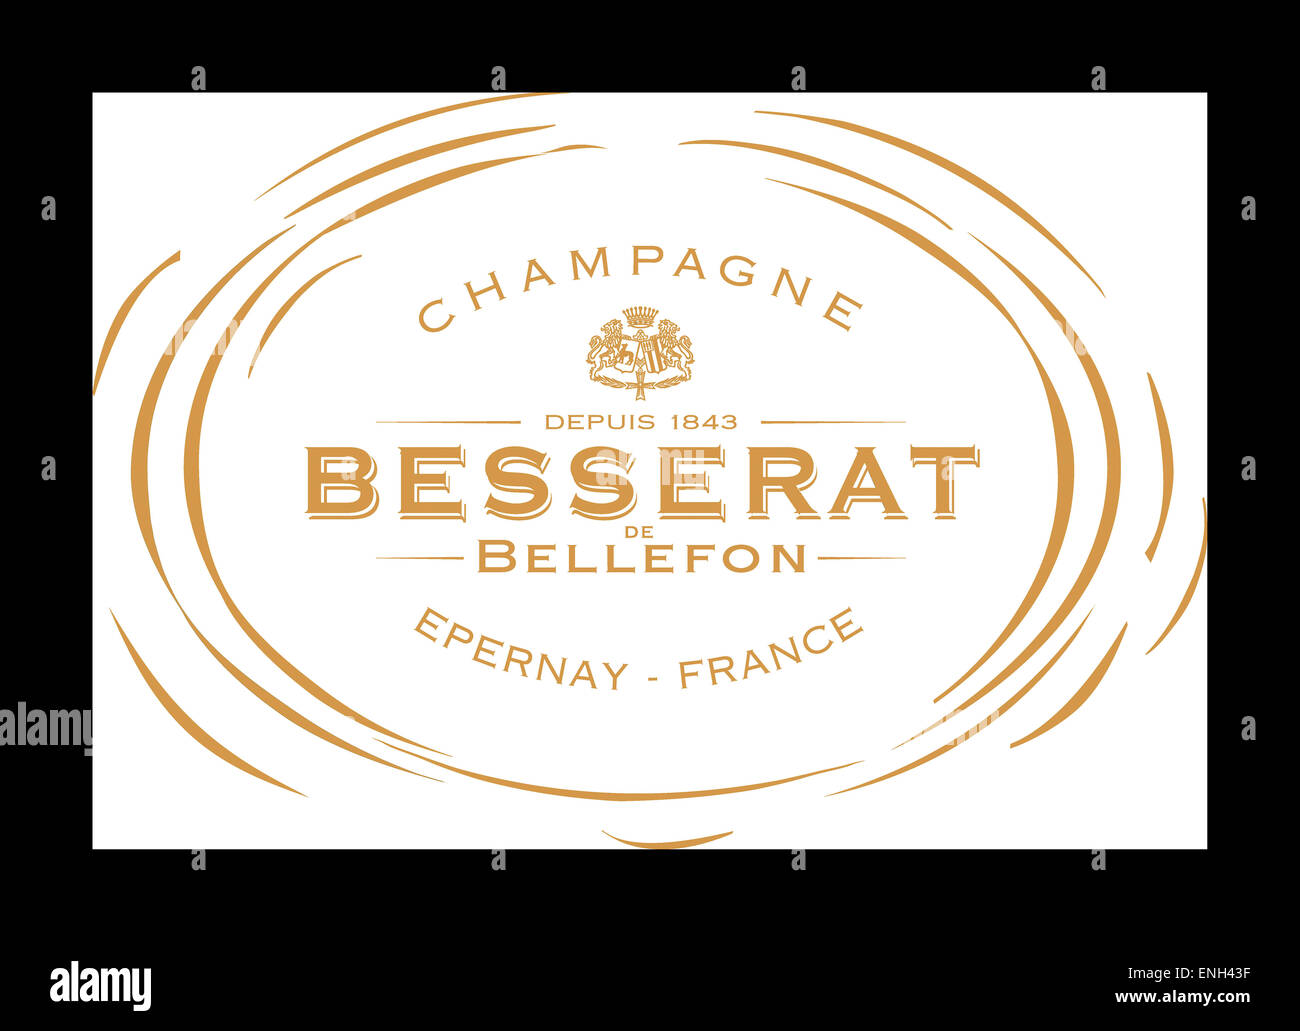 Pour l'étiquette de la bouteille de Champagne Besserat de Bellefon Banque D'Images